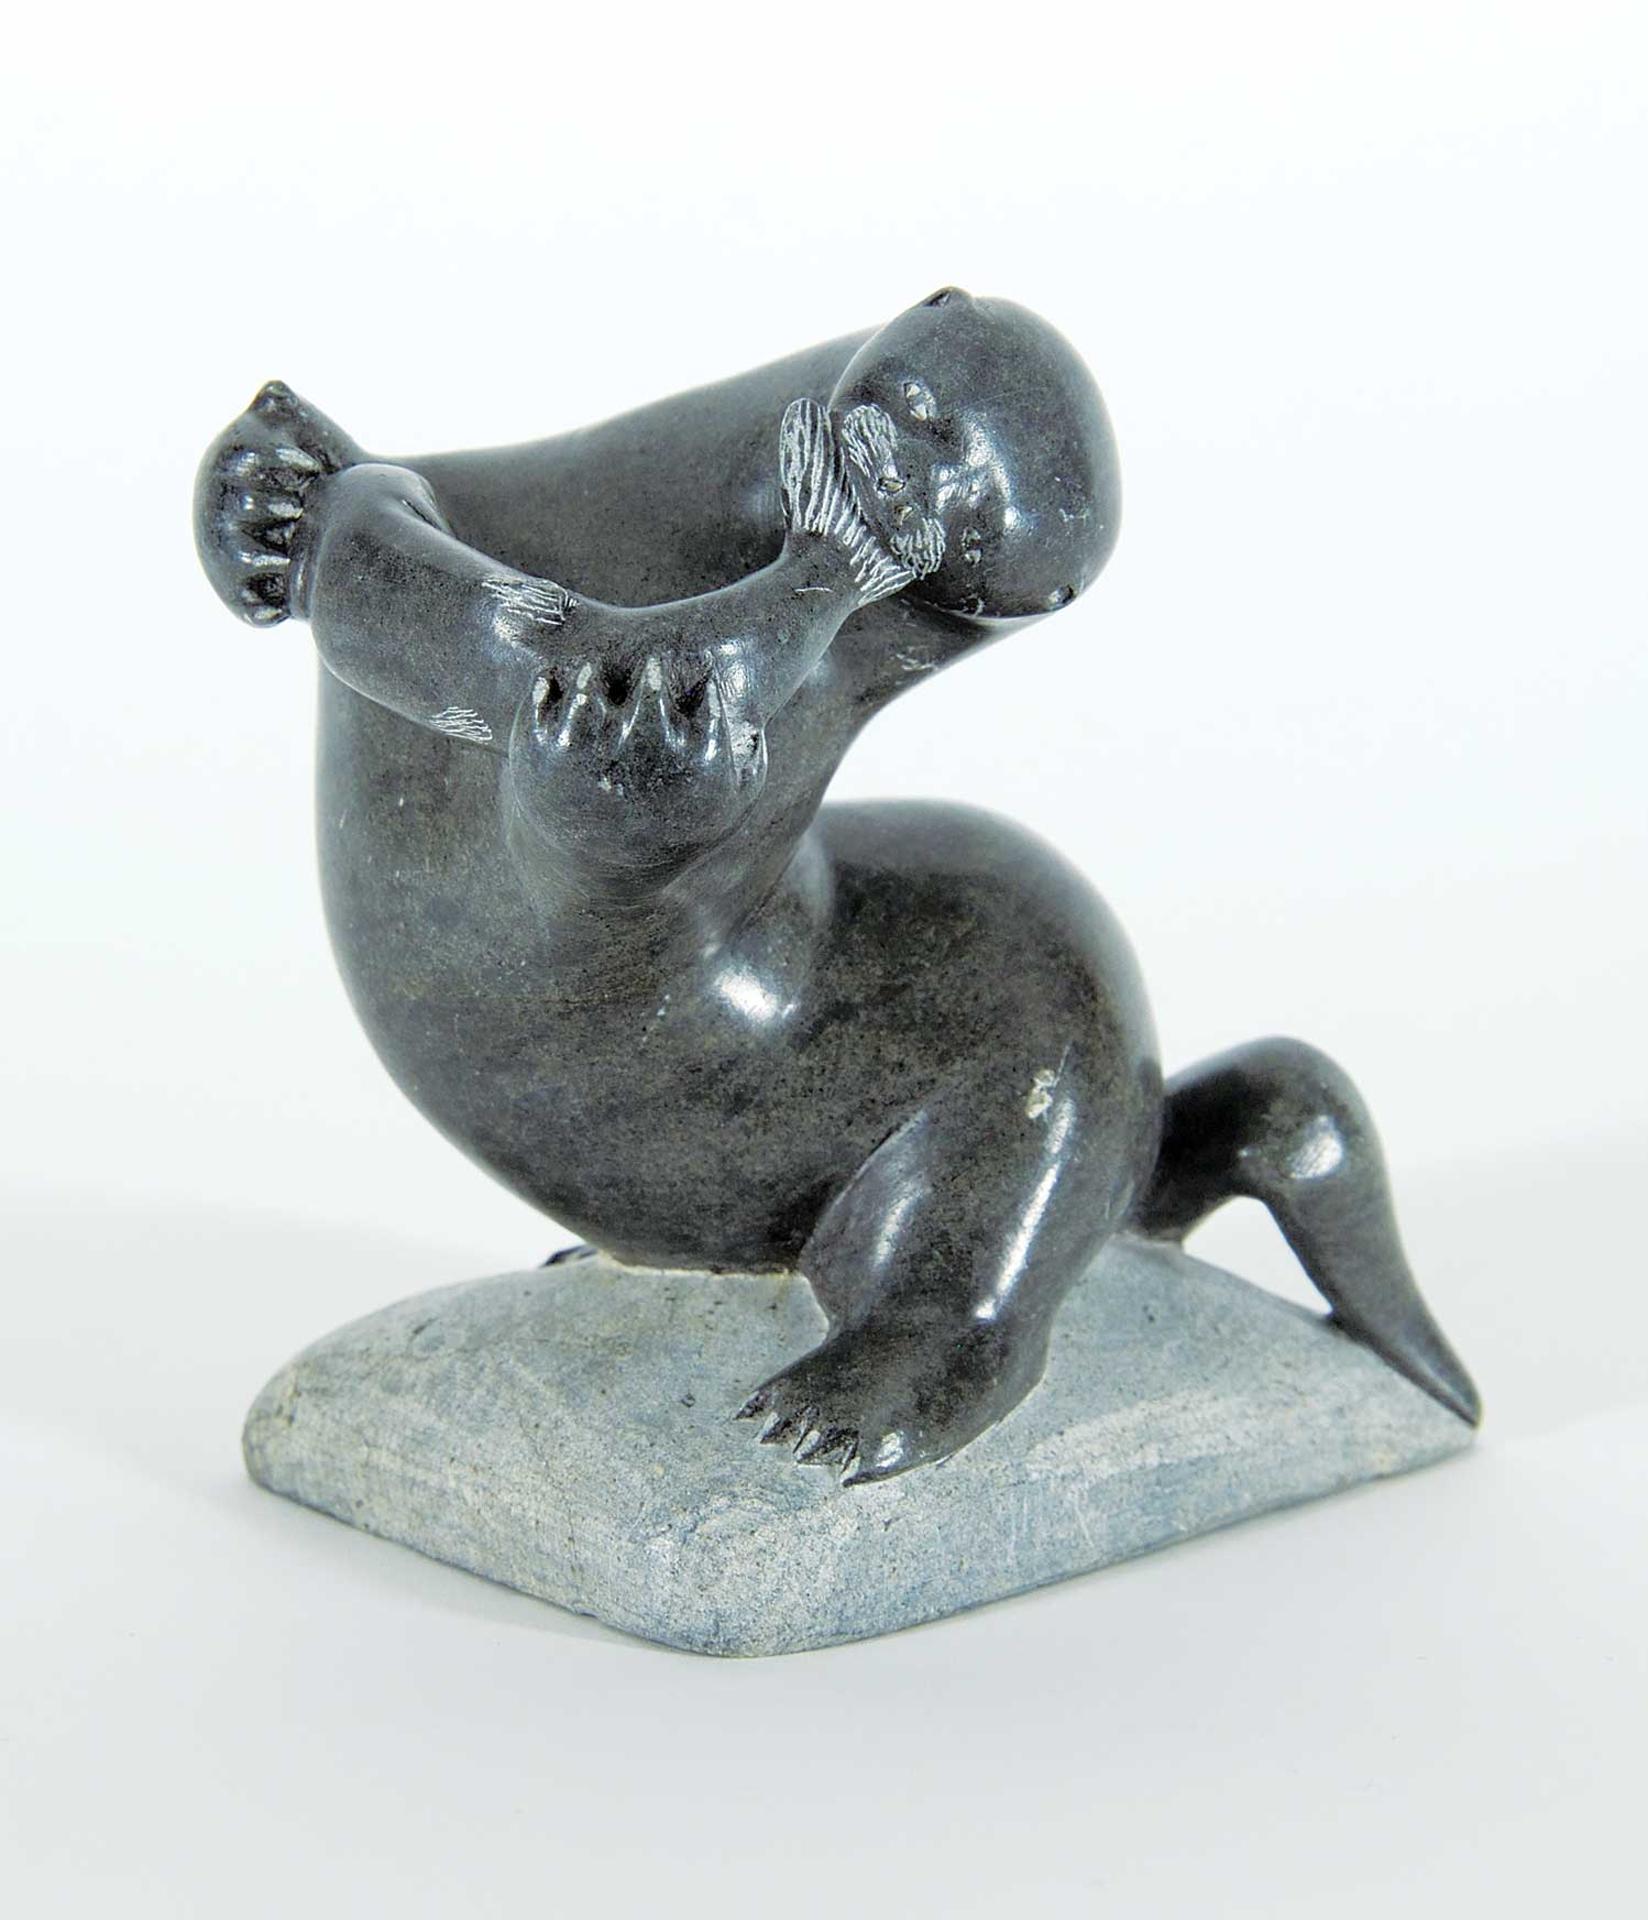 Jack Joamasi - Untitled - Seal and Fish